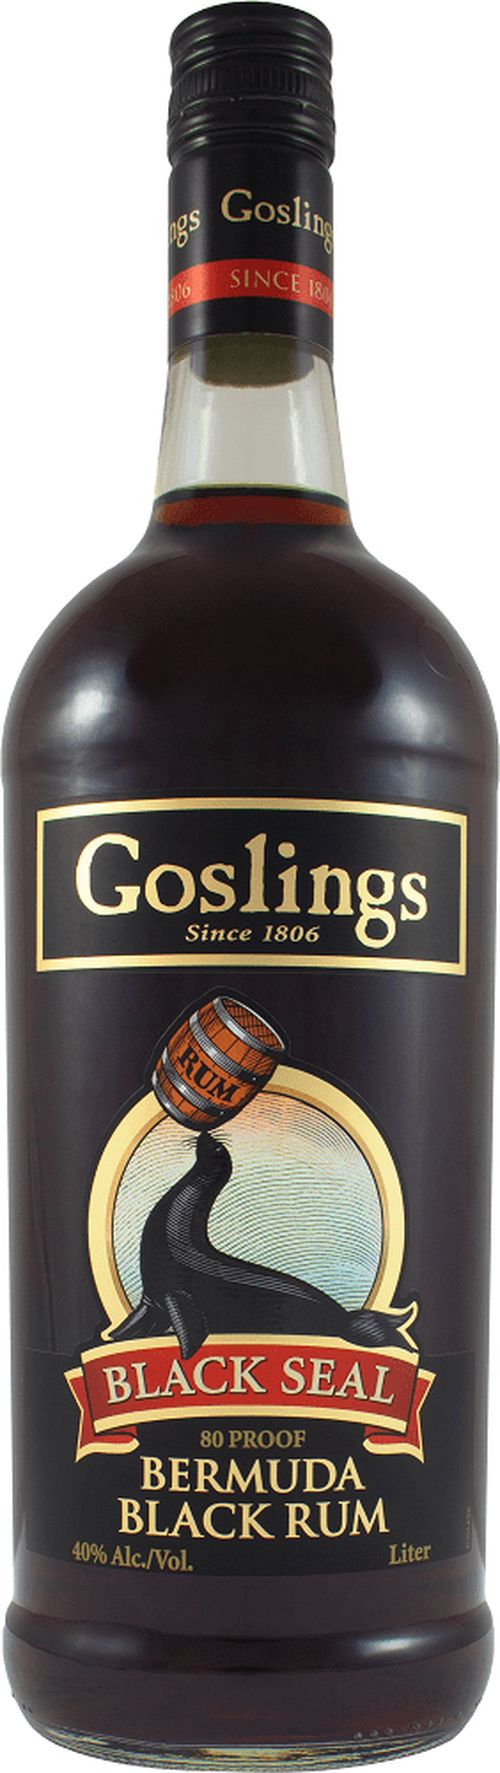 Goslings Gosling's Black Seal 40% 1l